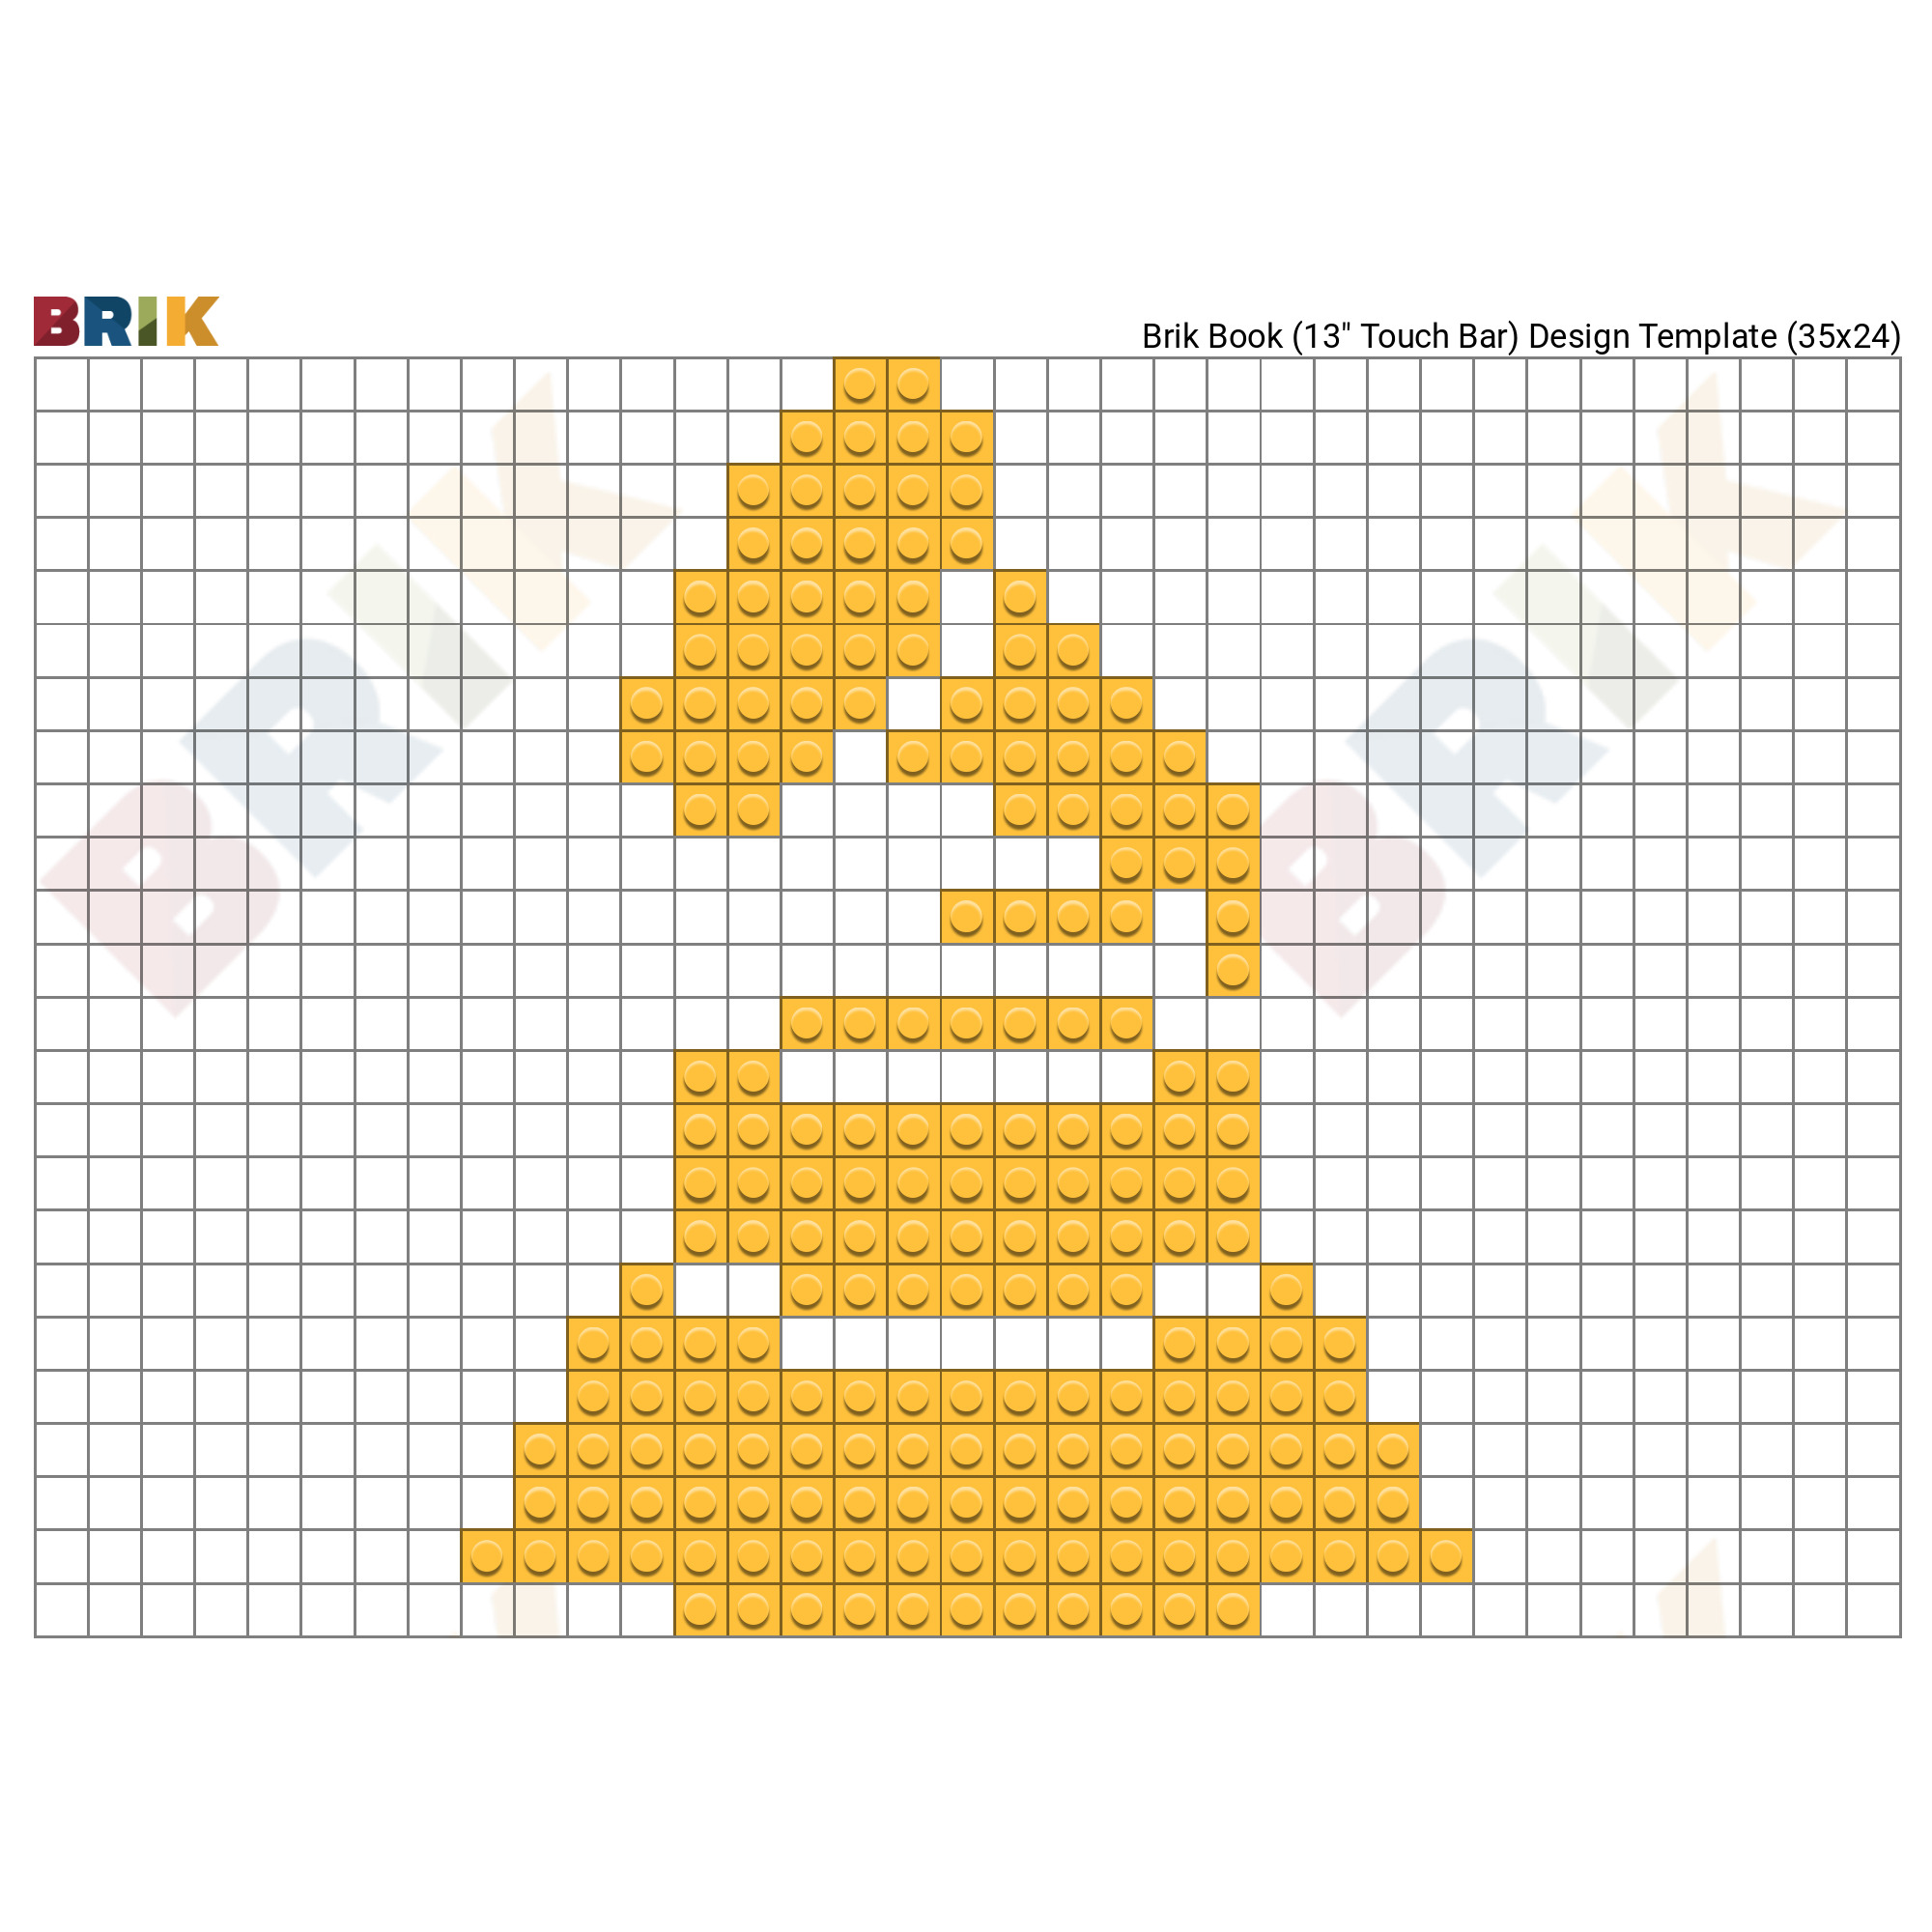 triforce pixel art template